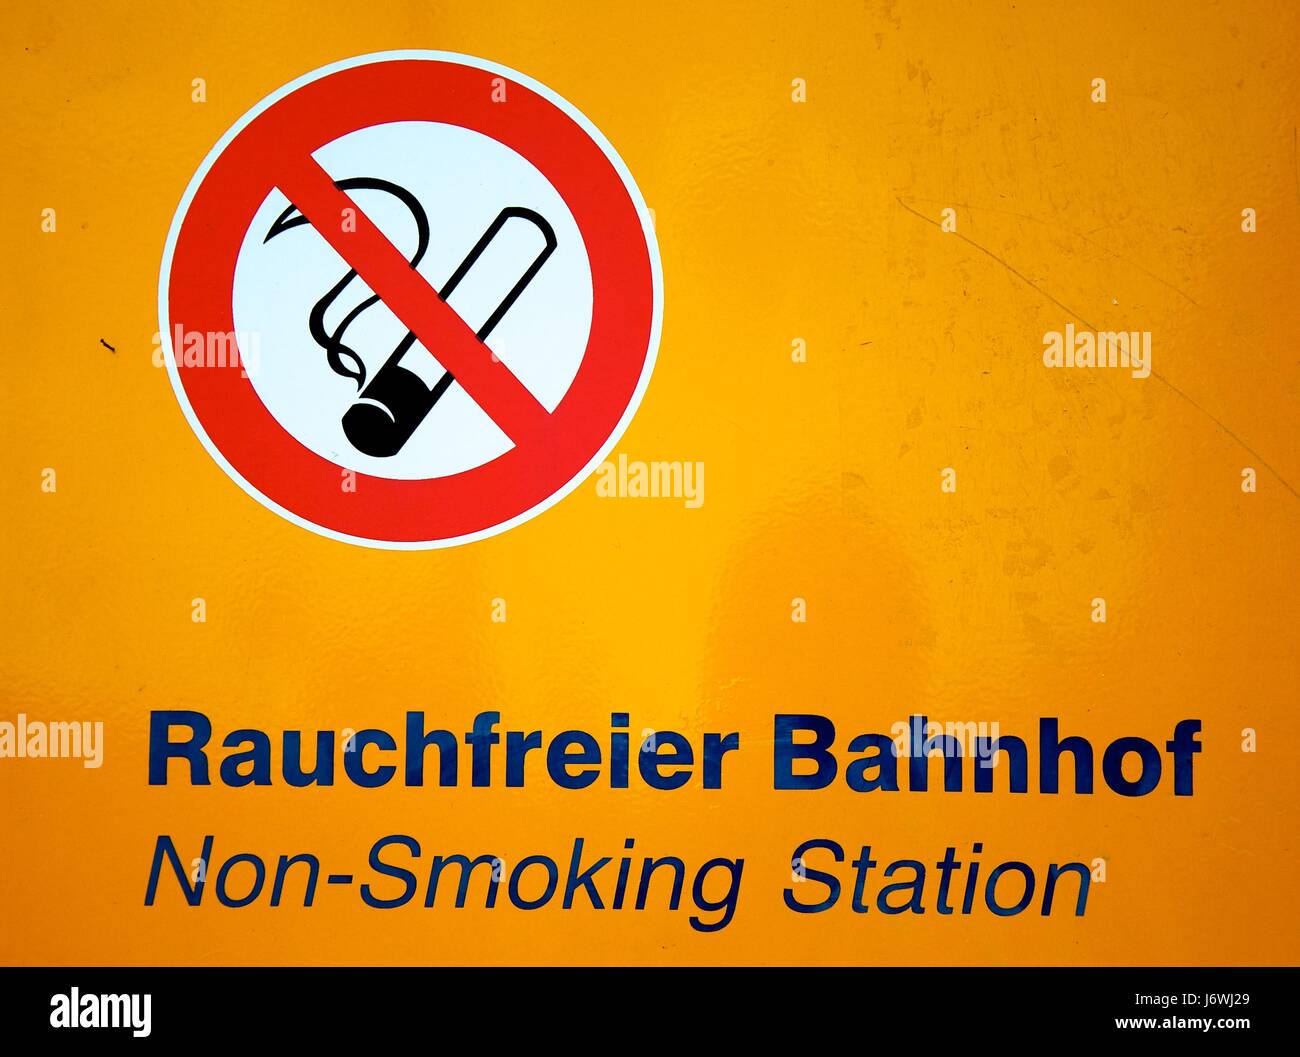 non-smoking station Stock Photo